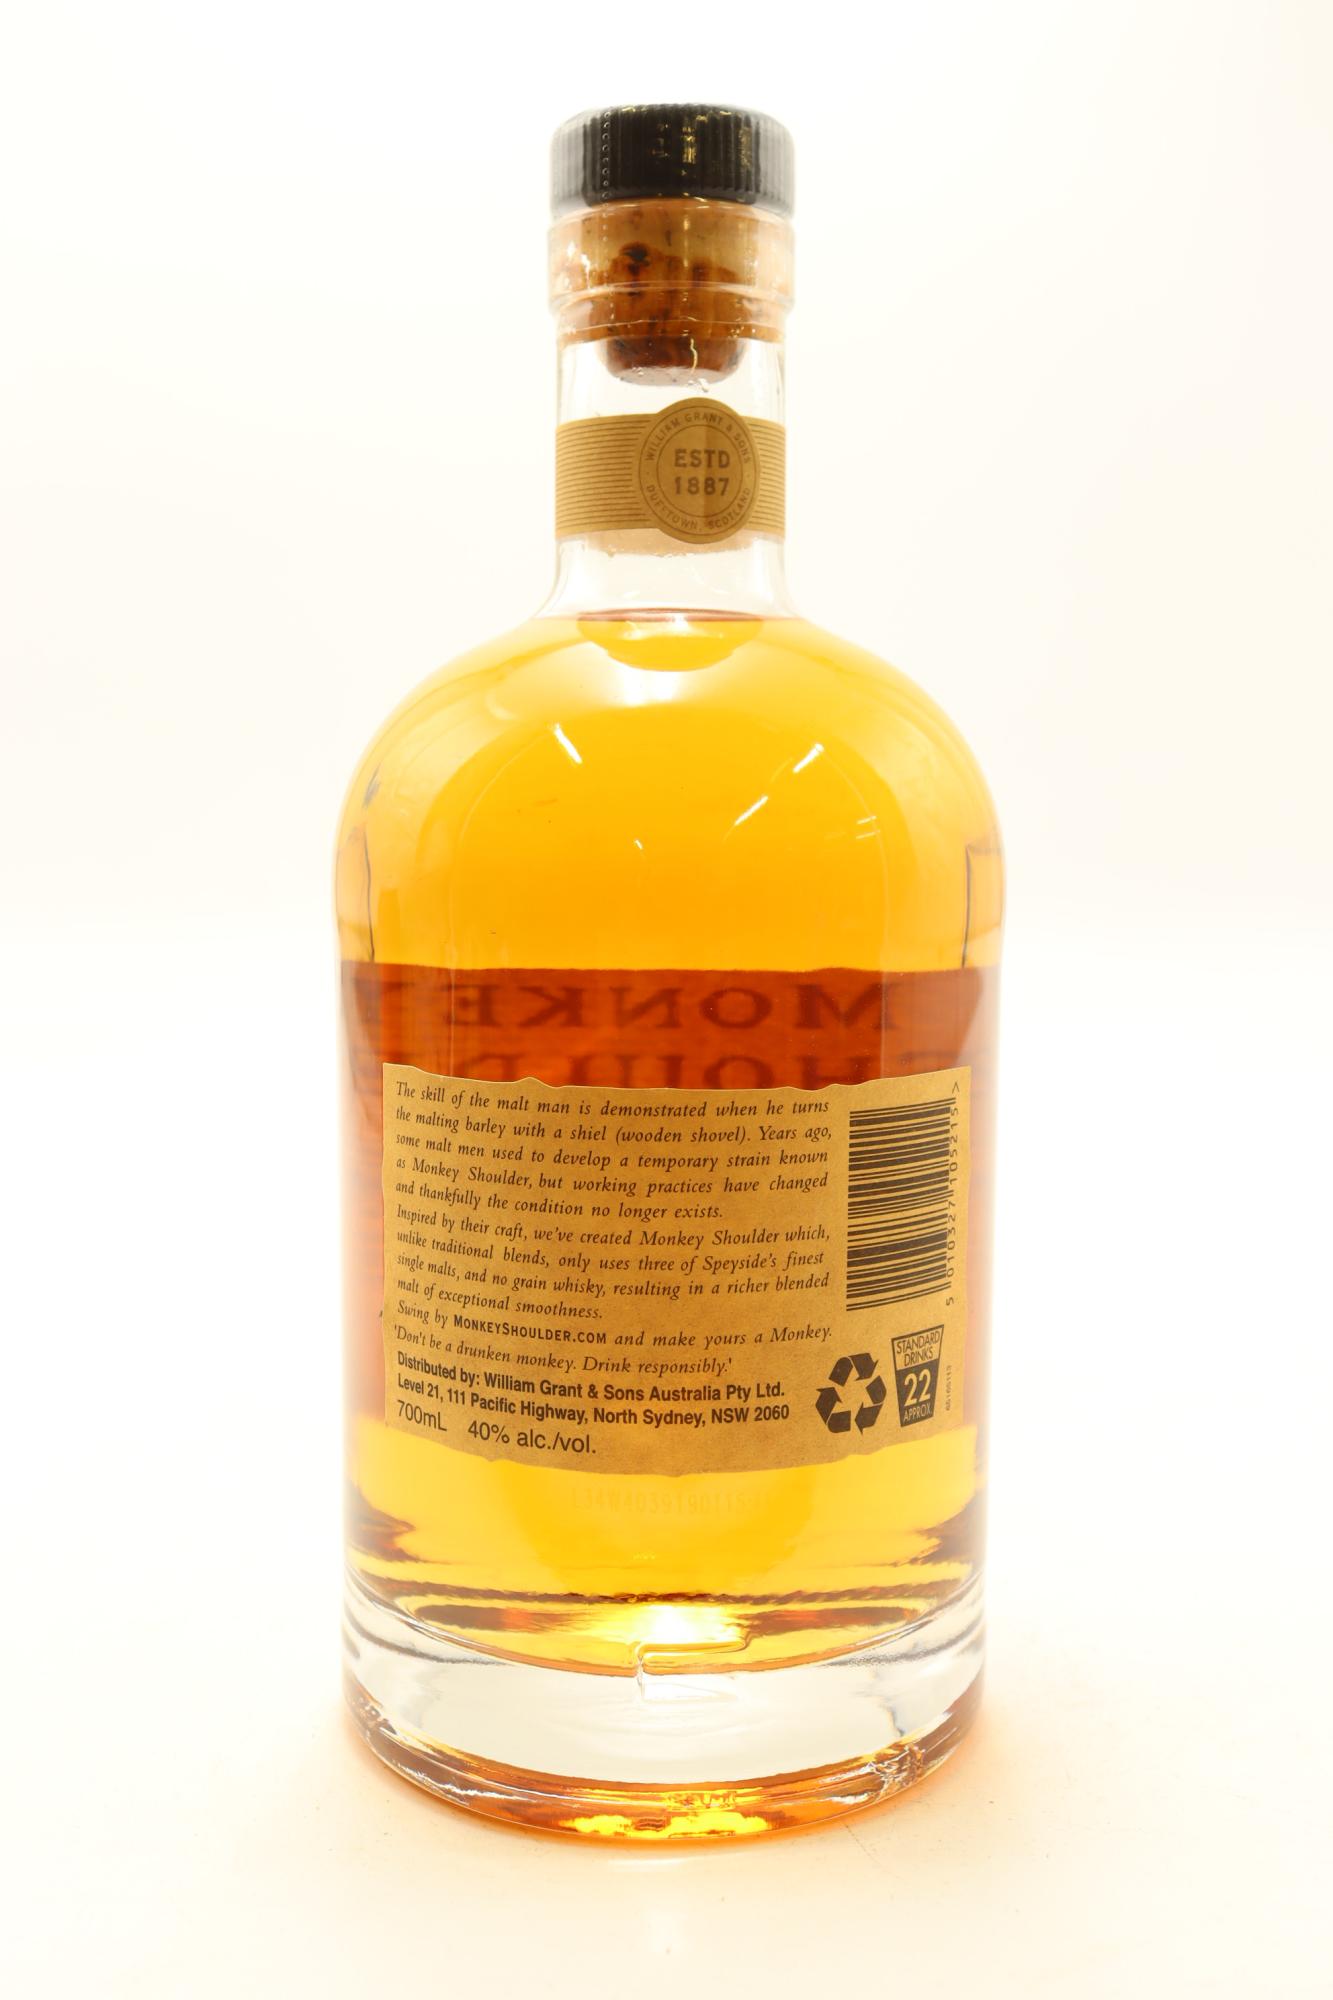 1) Monkey Shoulder Batch 27 Blended Scotch Whisky, 40% ABV